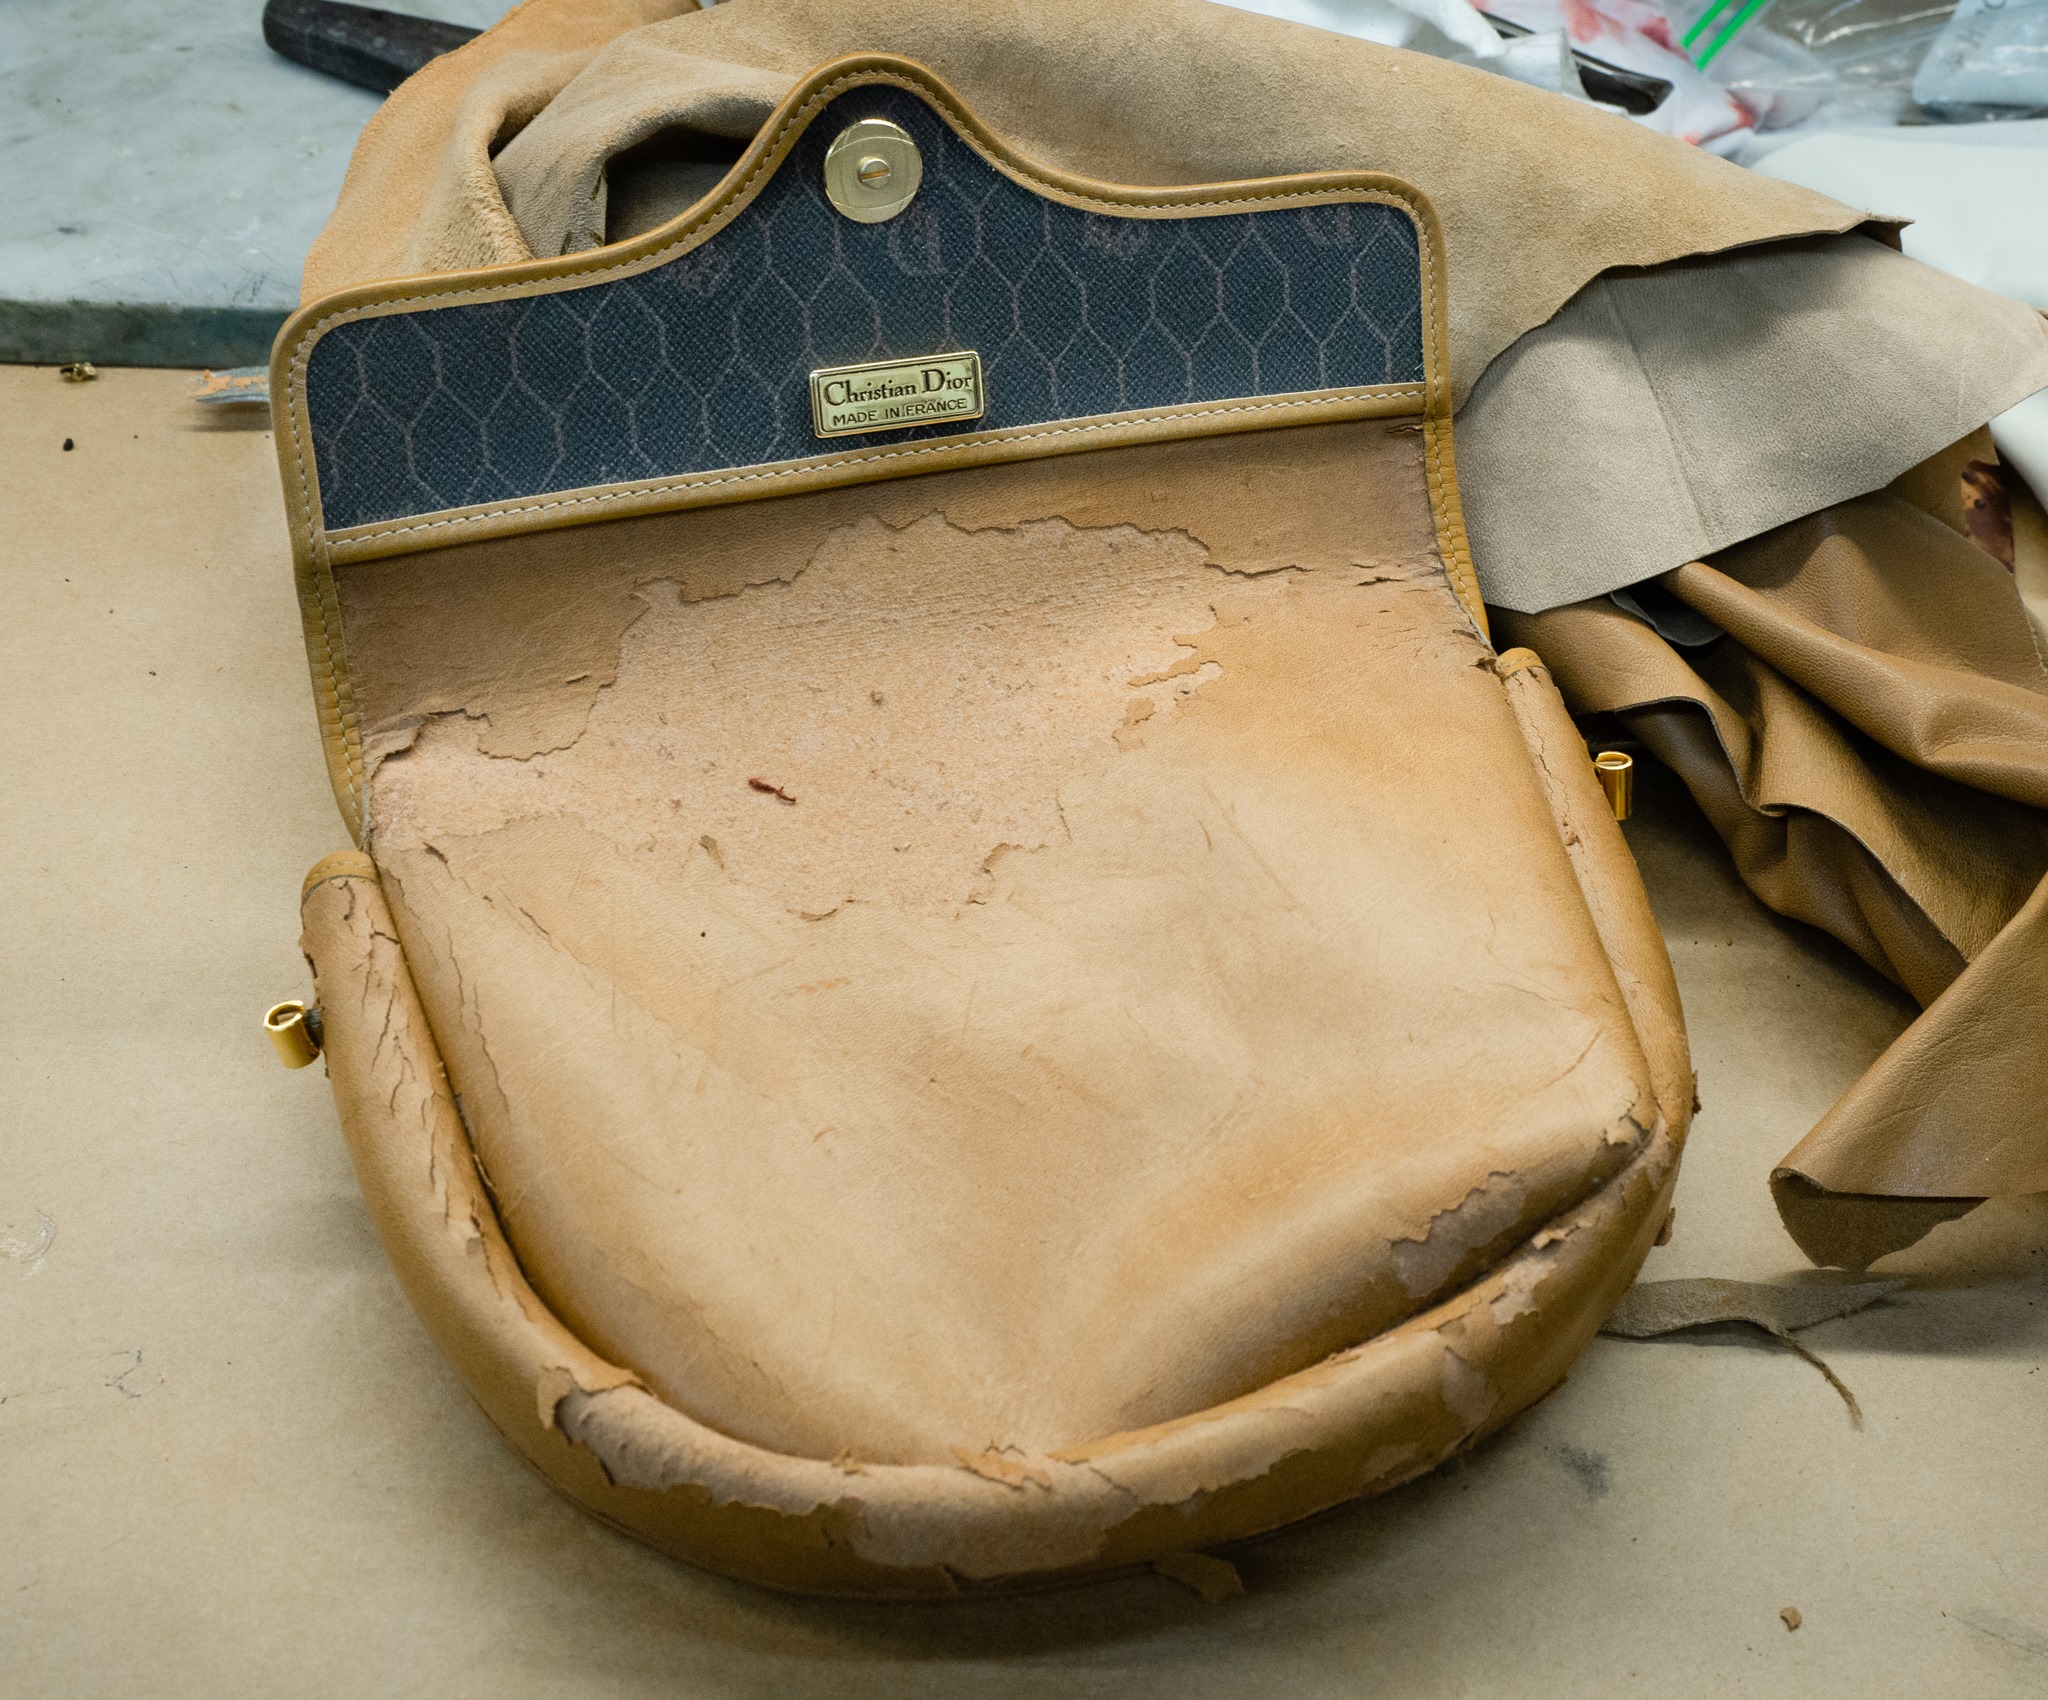 Christian Dior Handbag Cleaning, Repair & Restoration